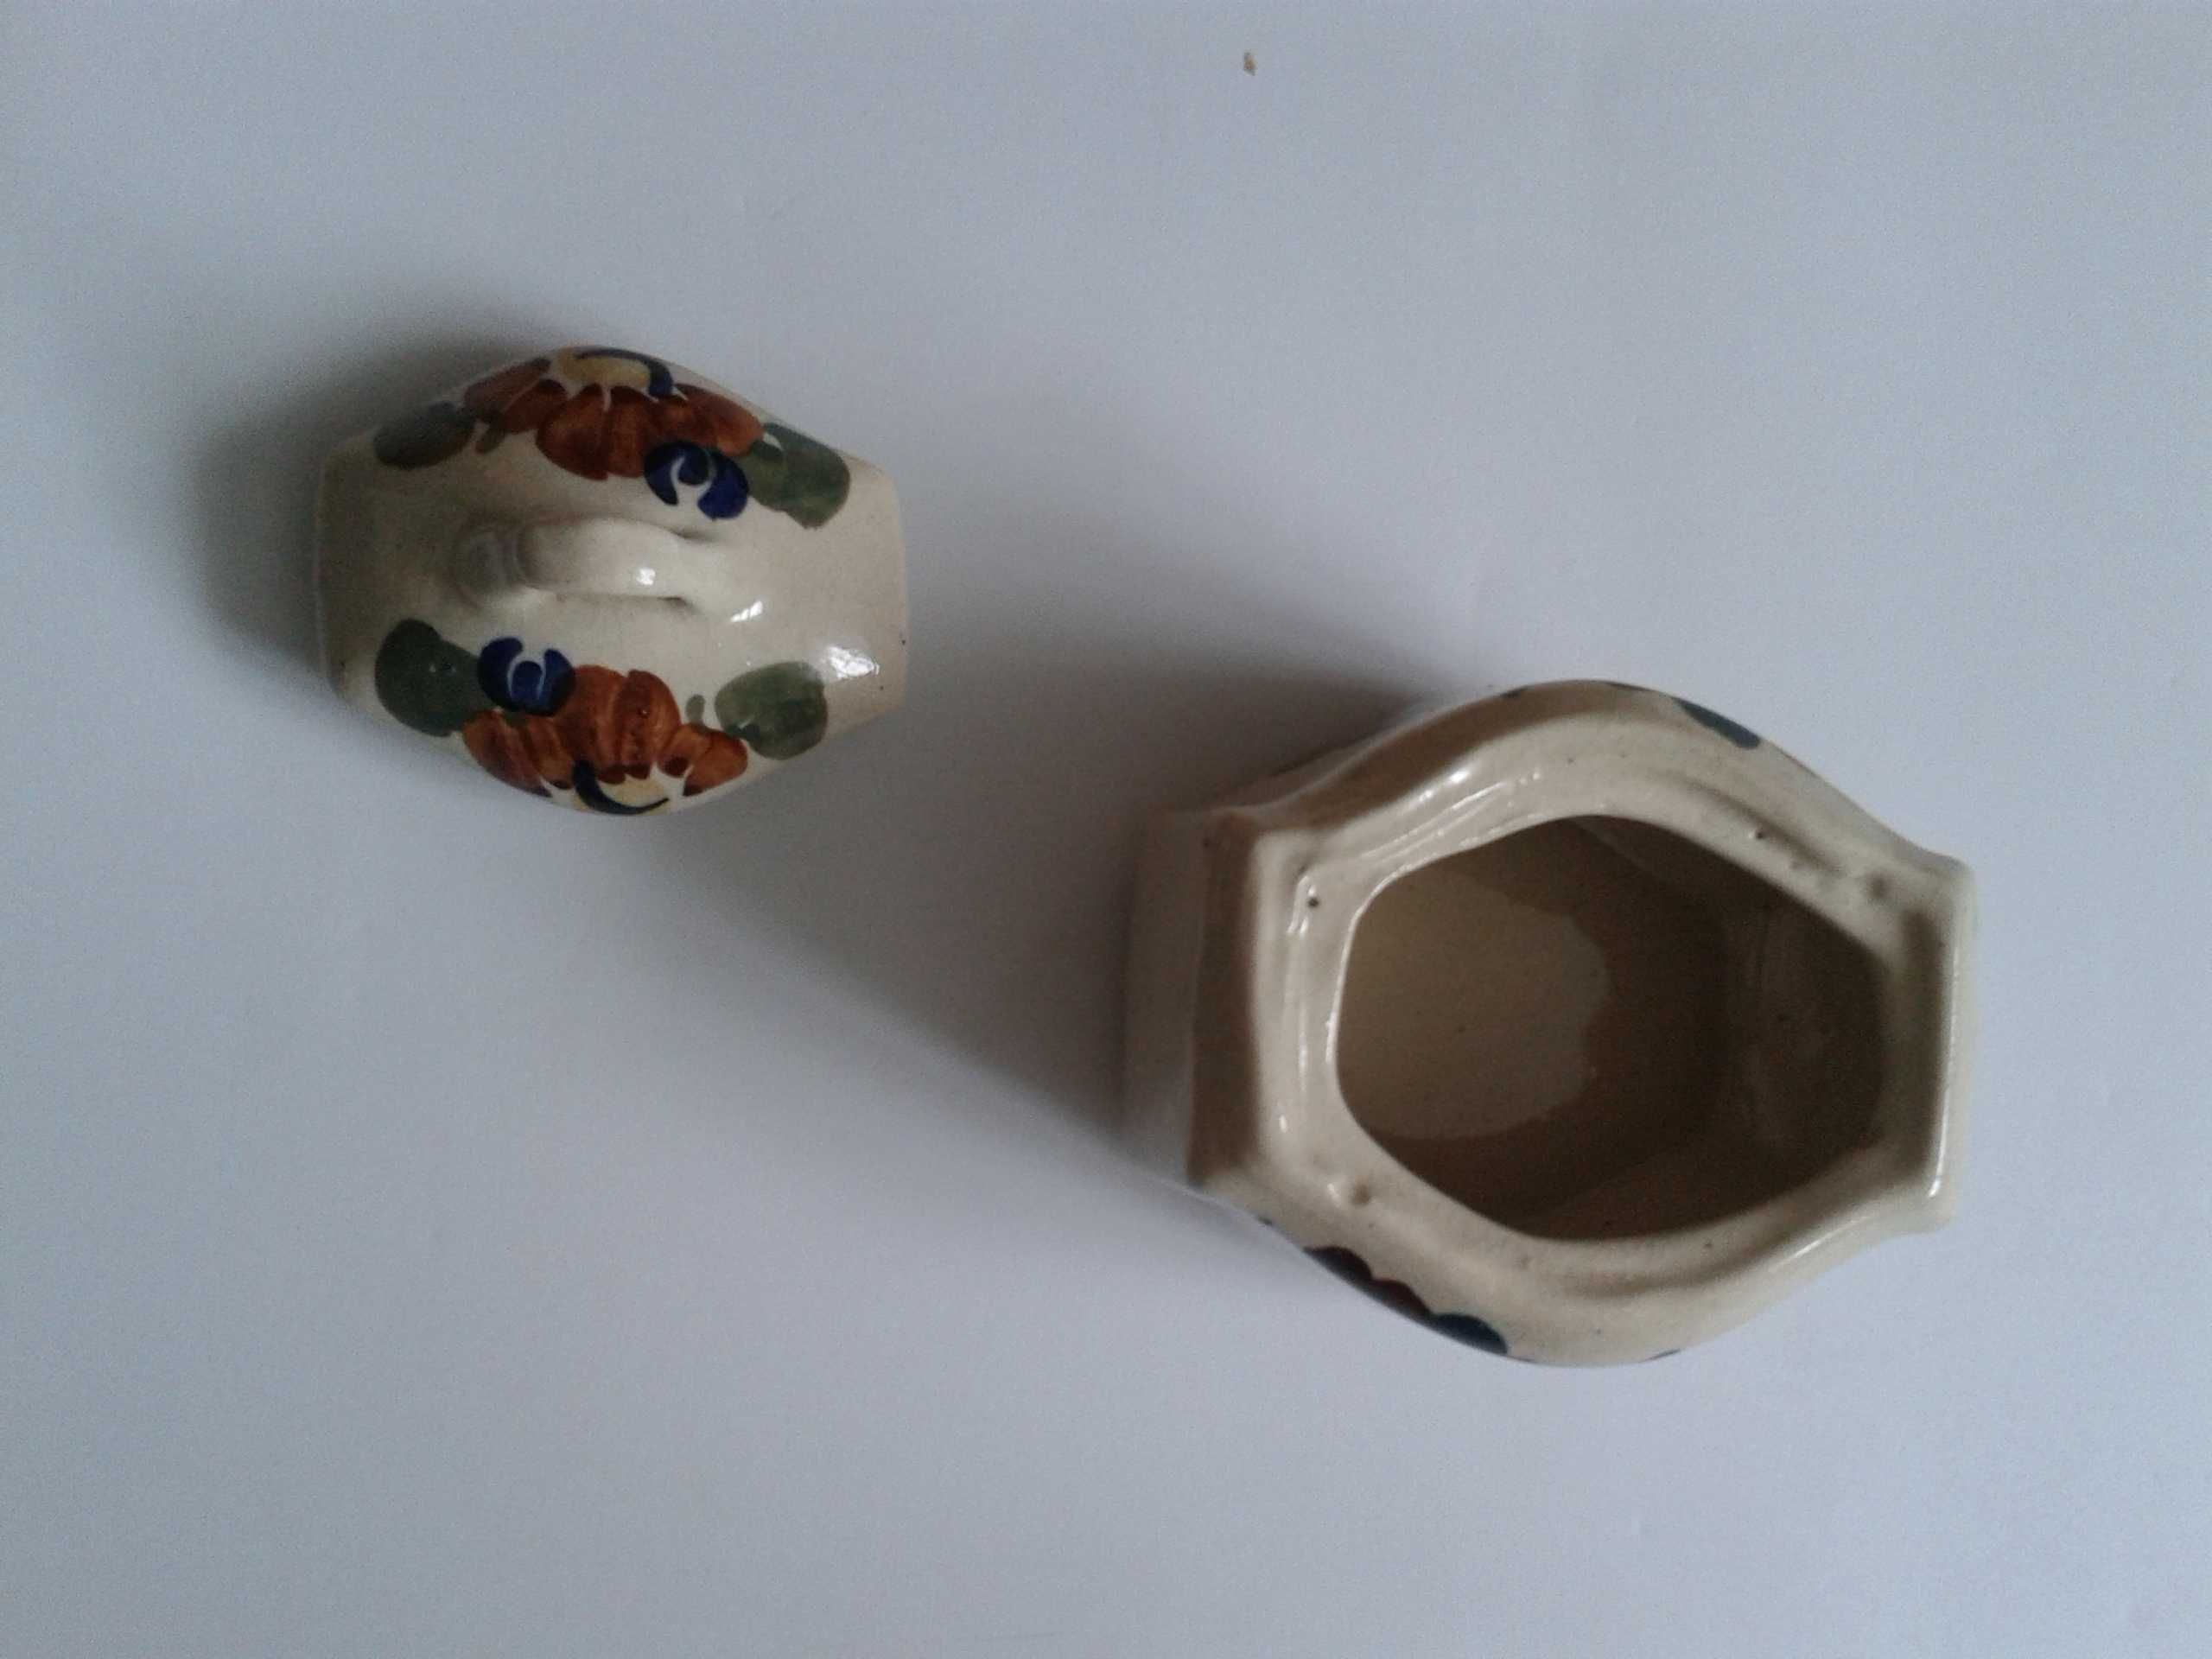 Cukiernica ceramiczna z przykrywką beż kwiaty ceramika